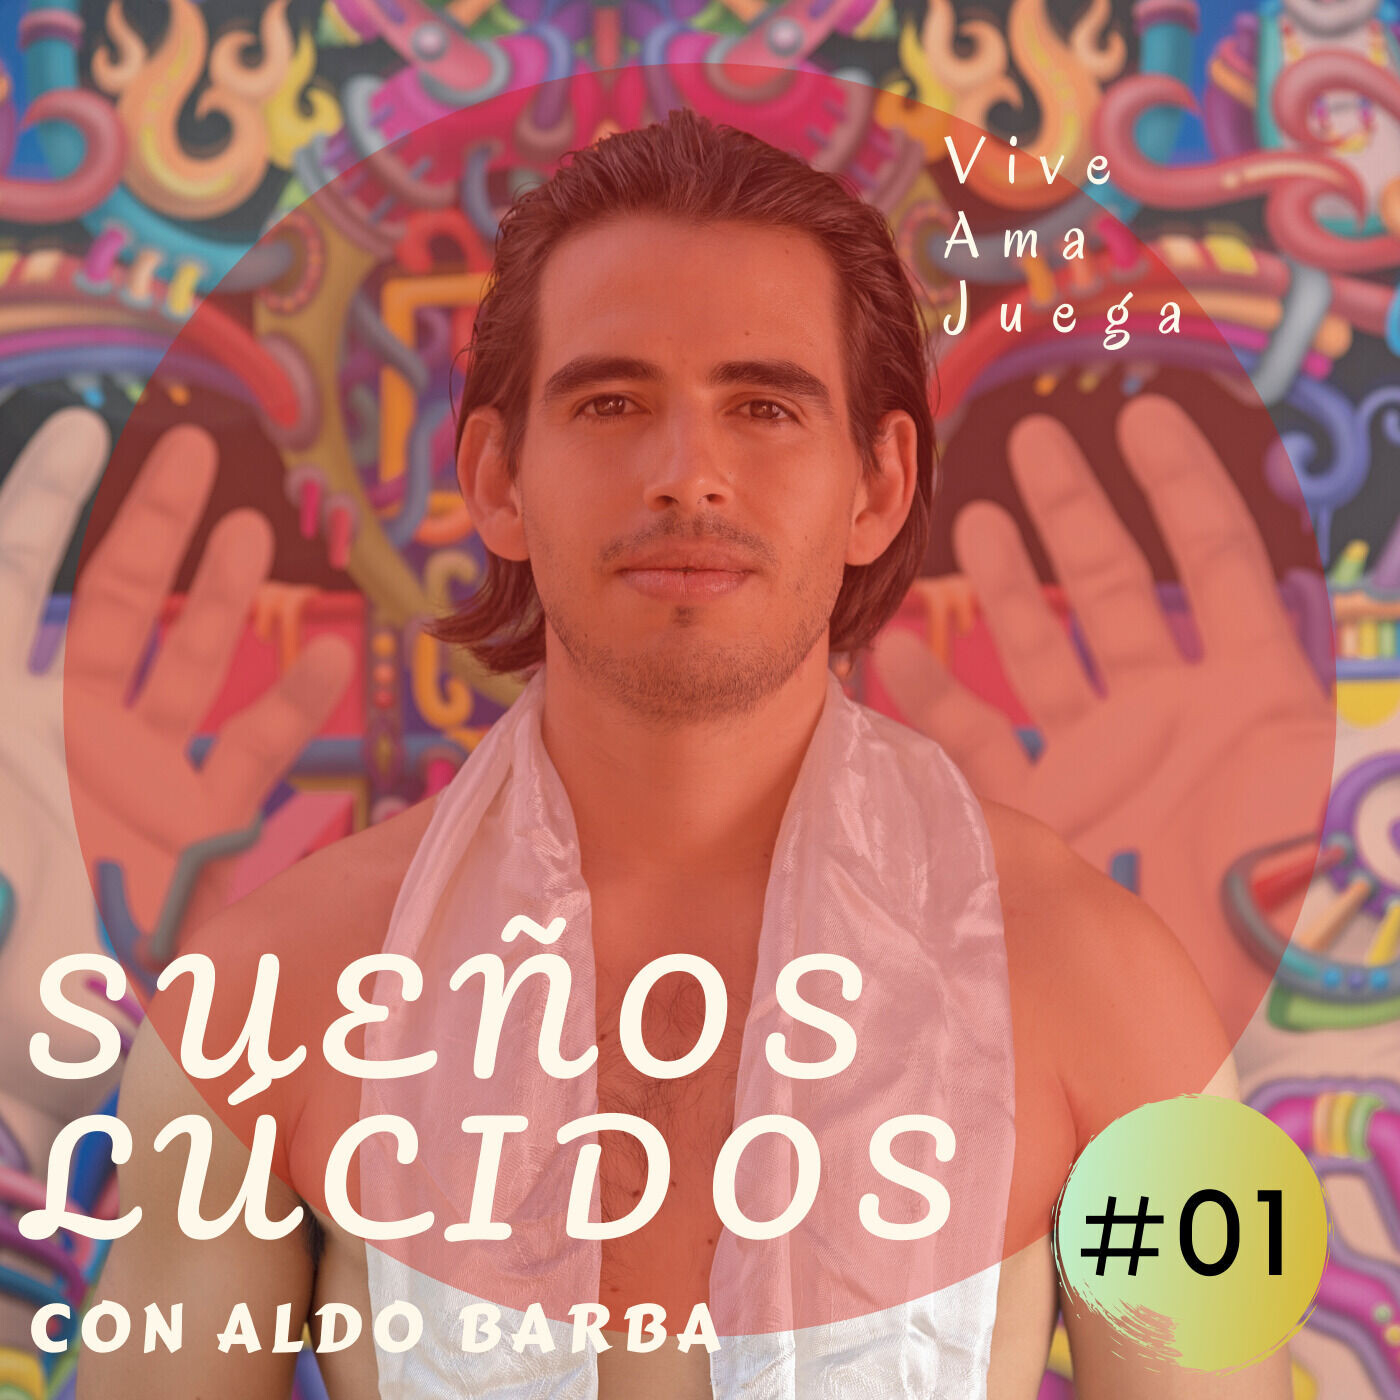 #01 Sueños Lúcidos con Aldo Barba, ¡Bienvenido!